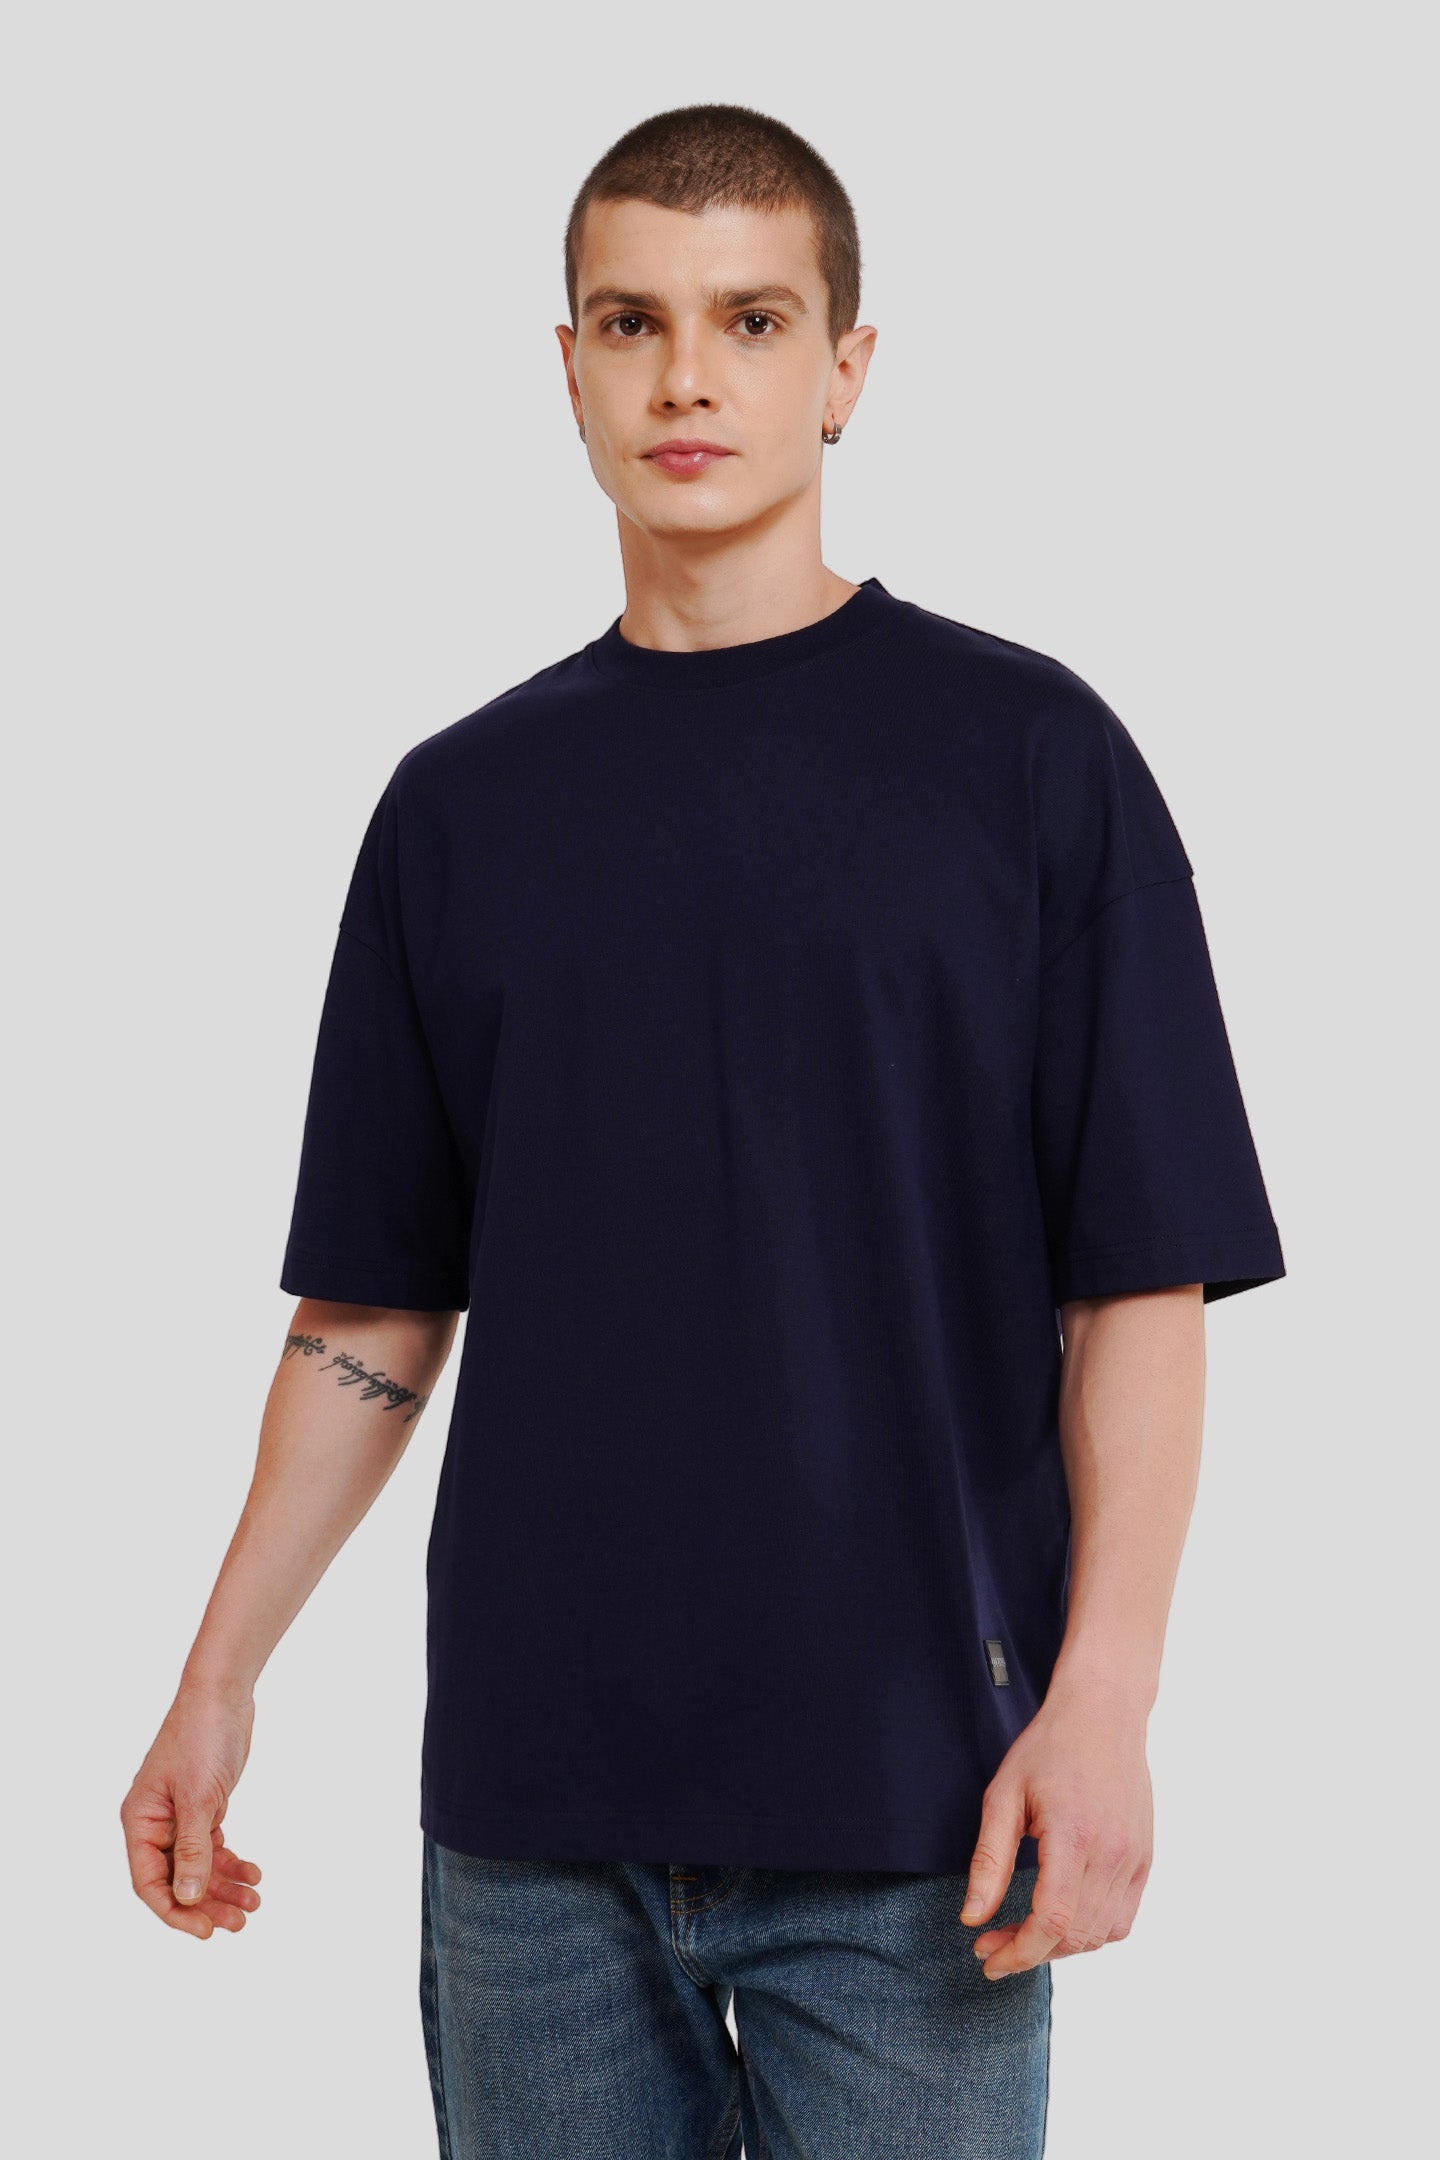 Palm Navy Blue Baggy Fit T-Shirt Men Pic 2